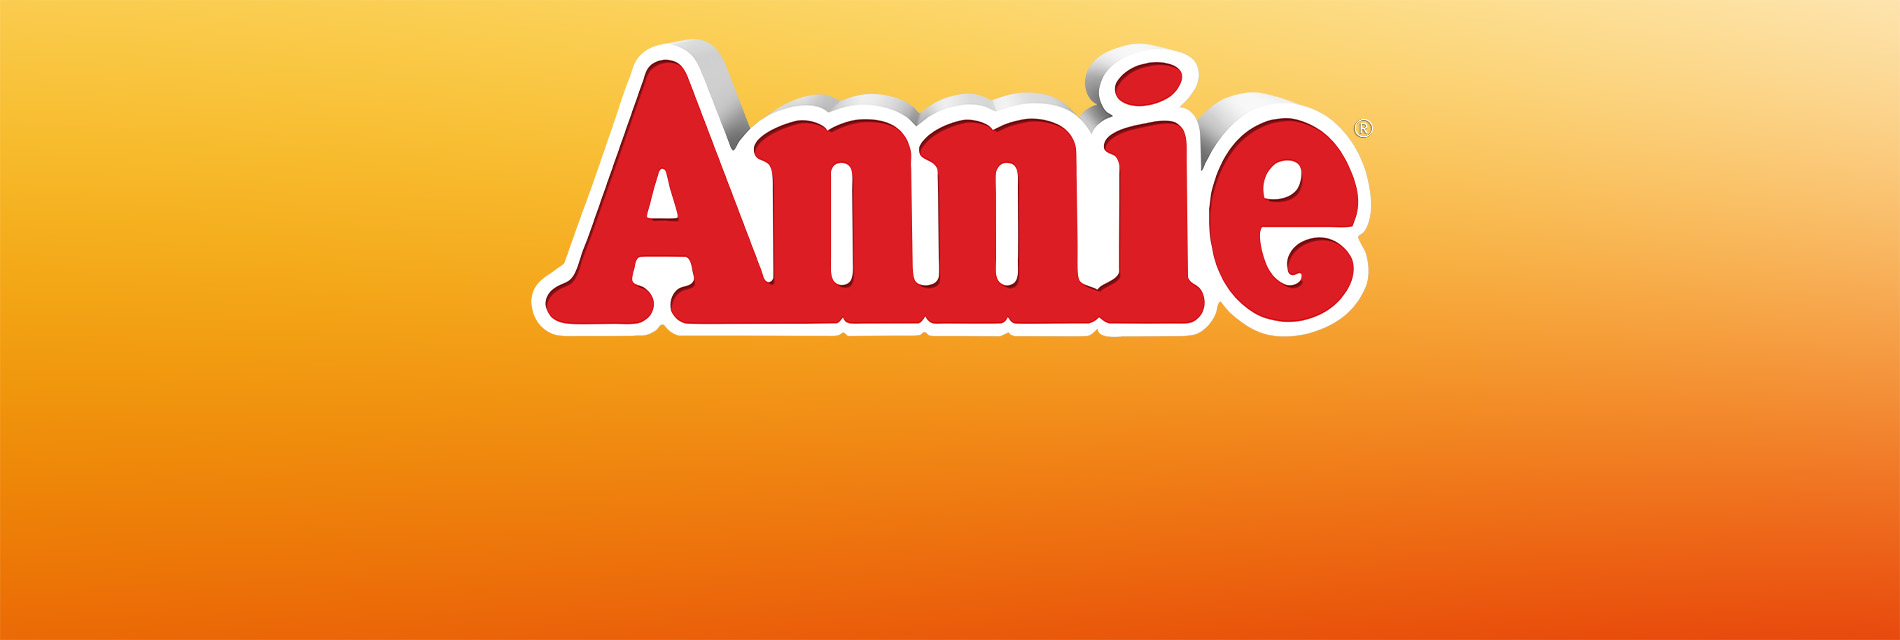 Slide 2: Annie